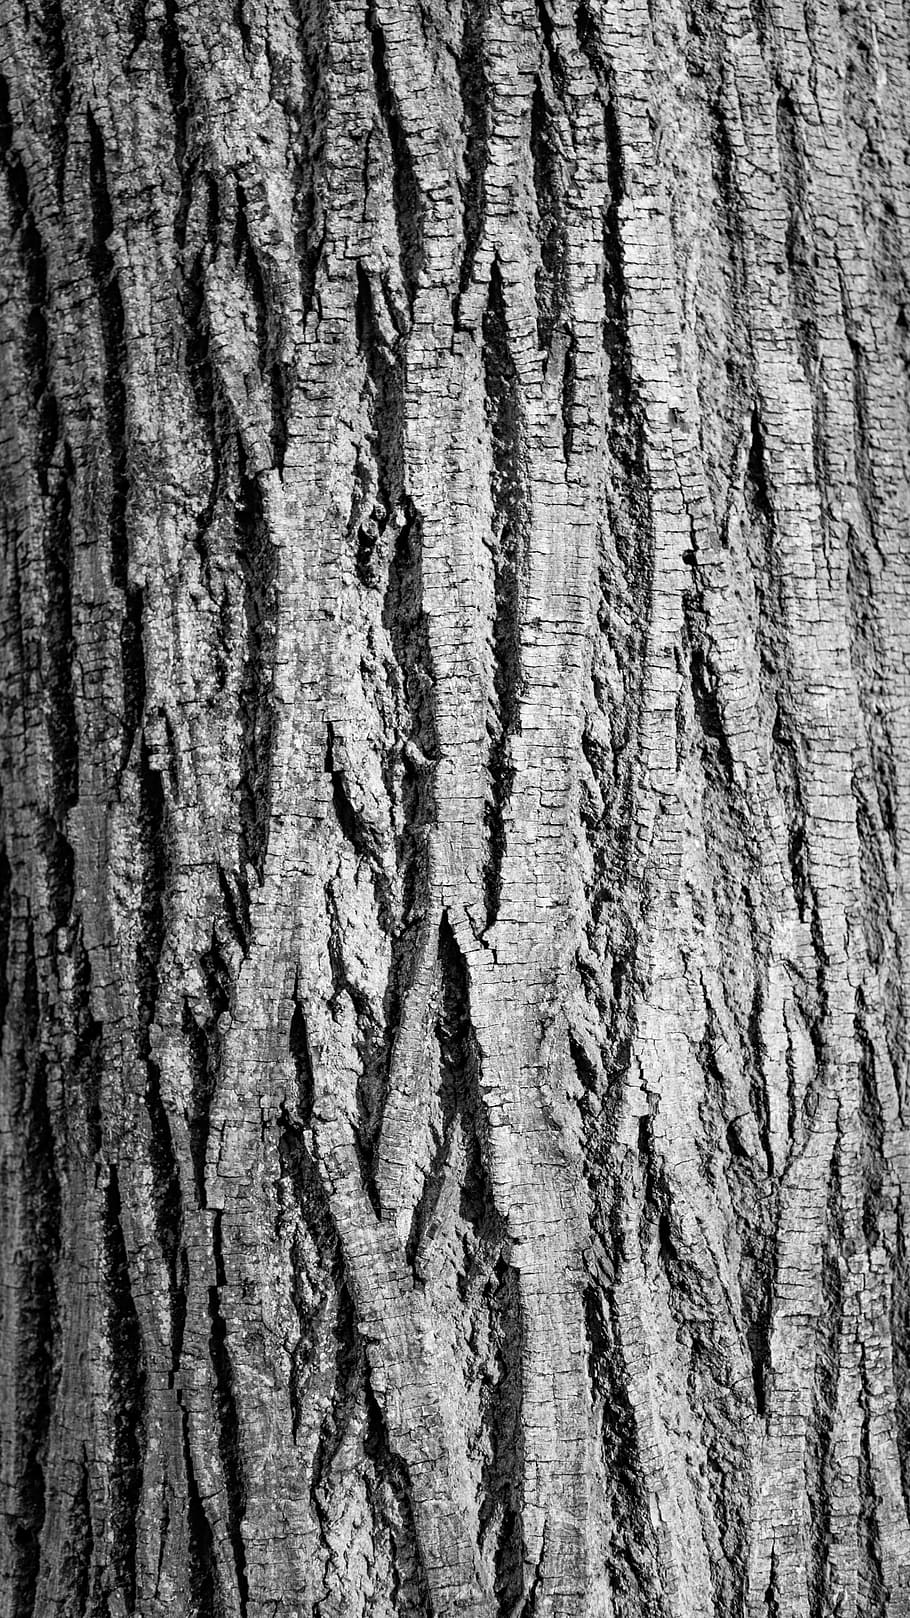 kulit pohon, istirahat, kontras, kurva, alur, garis, alam, ek, tekstur, pohon